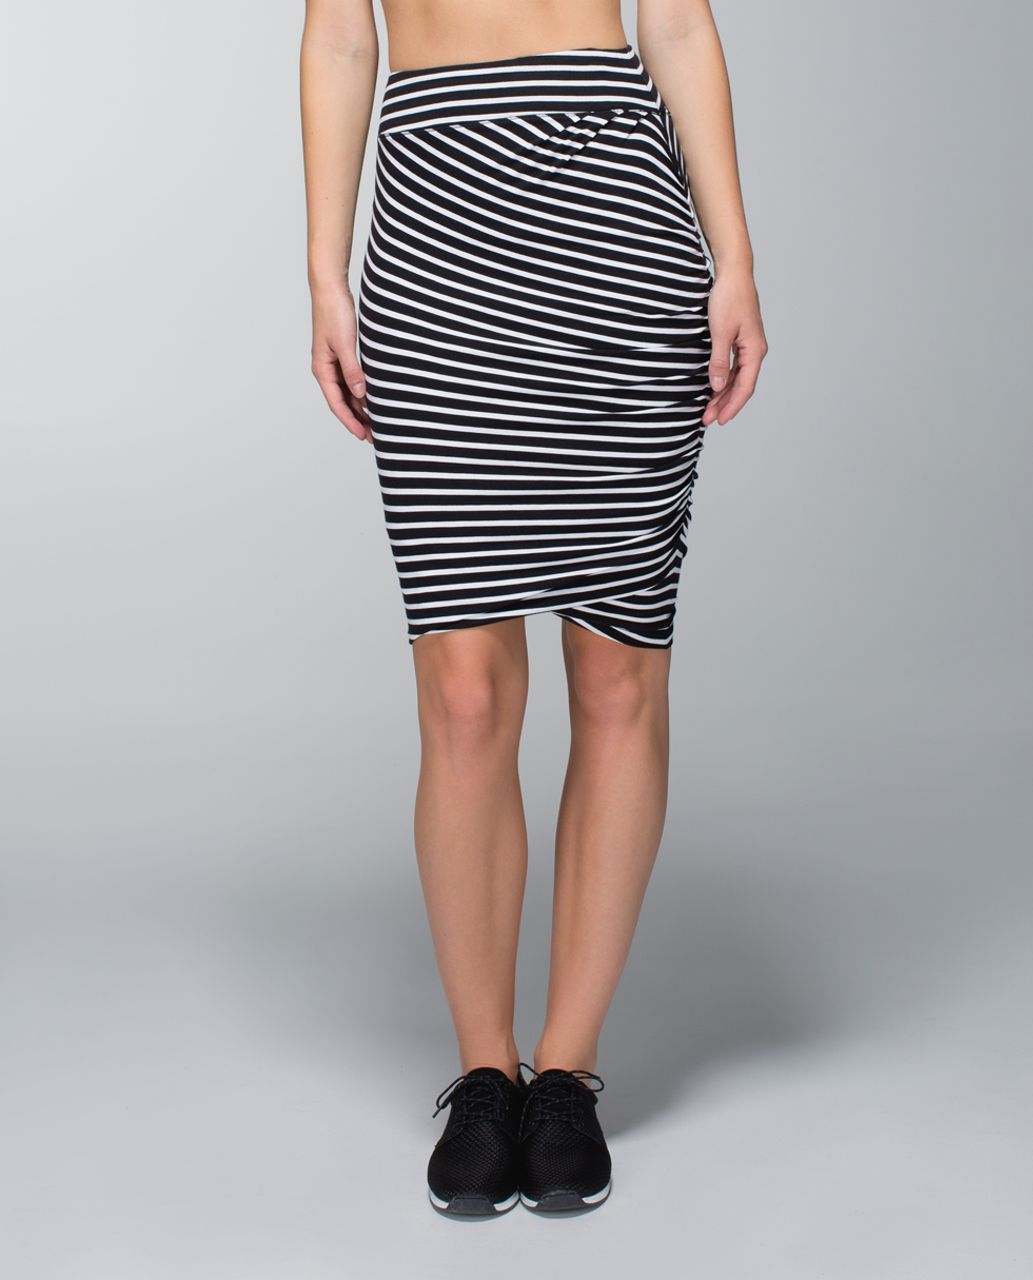 Lululemon Anytime Skirt - Deenie Stripe White Black